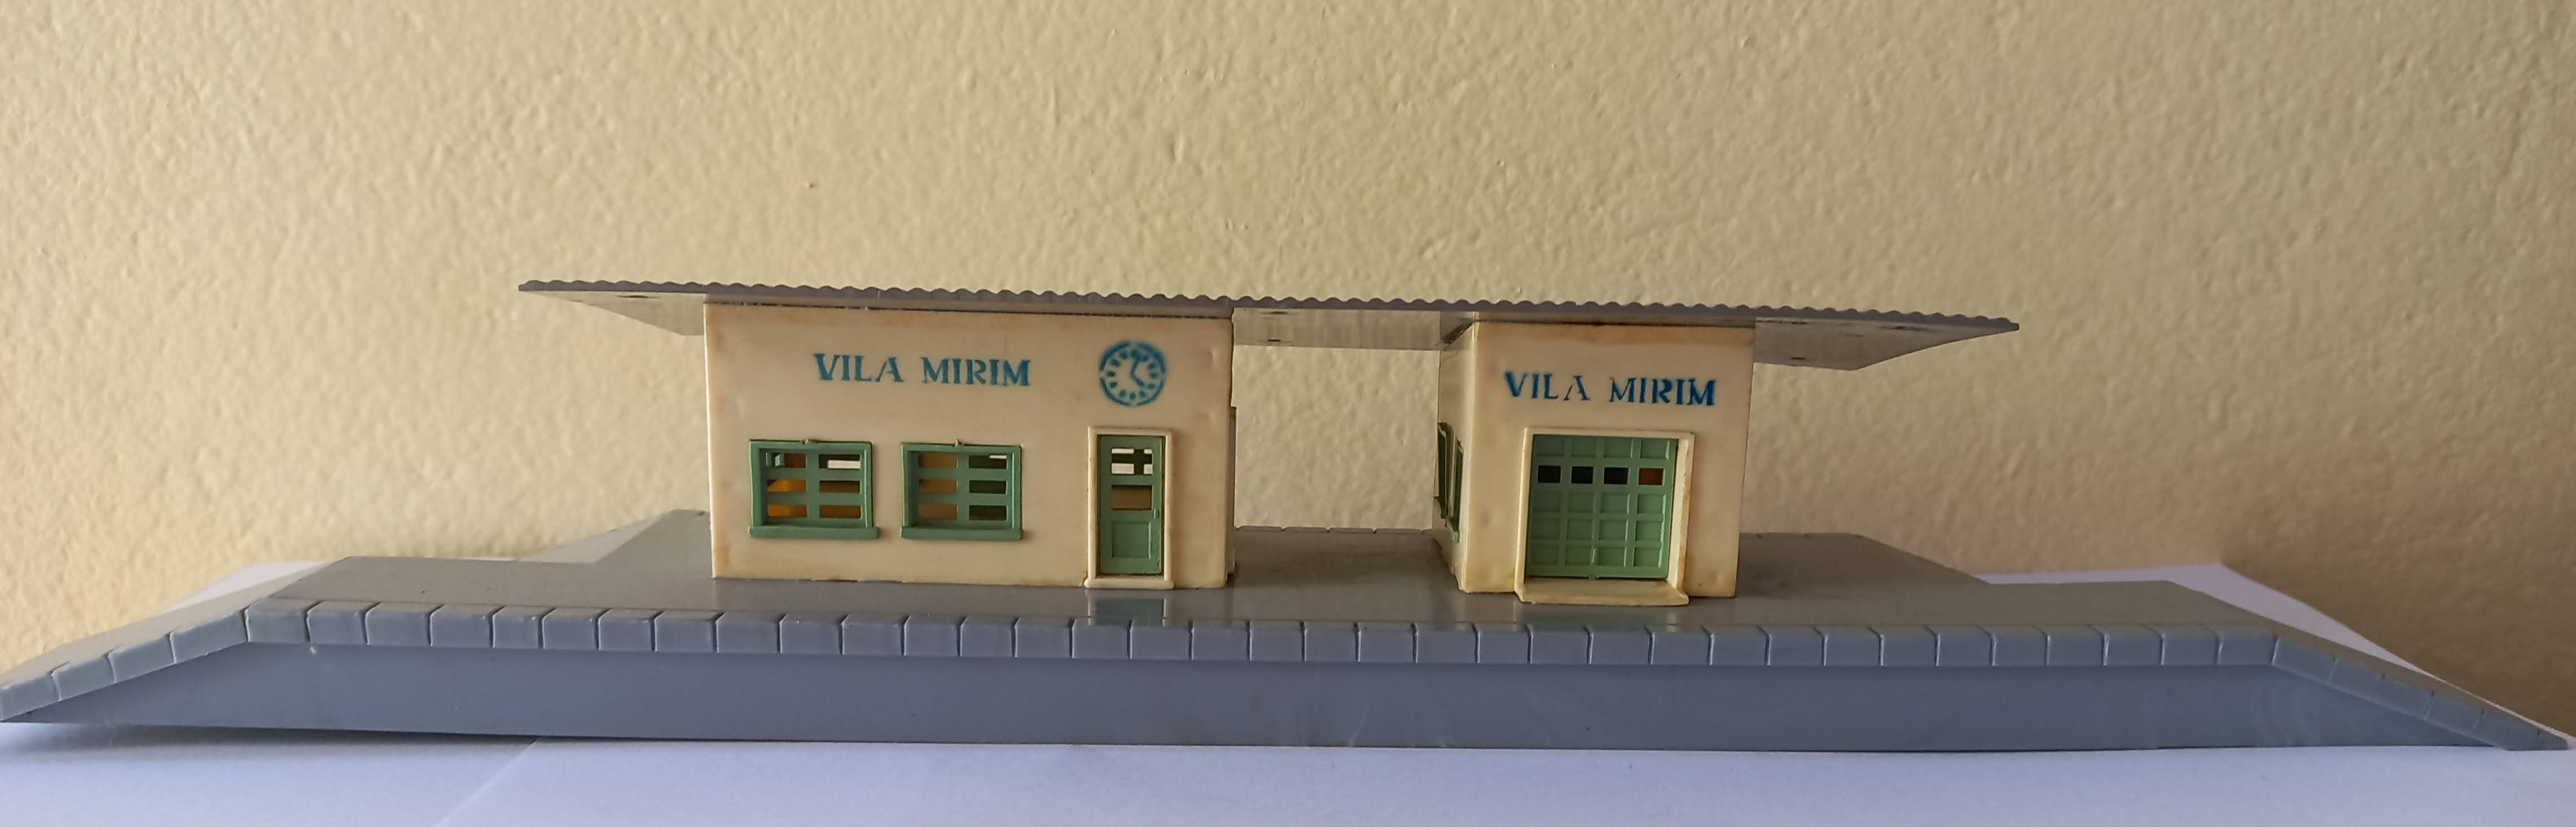 Estação Ferroviária Vila Mirim Década de 1960 ( Item de Coleção Rara)